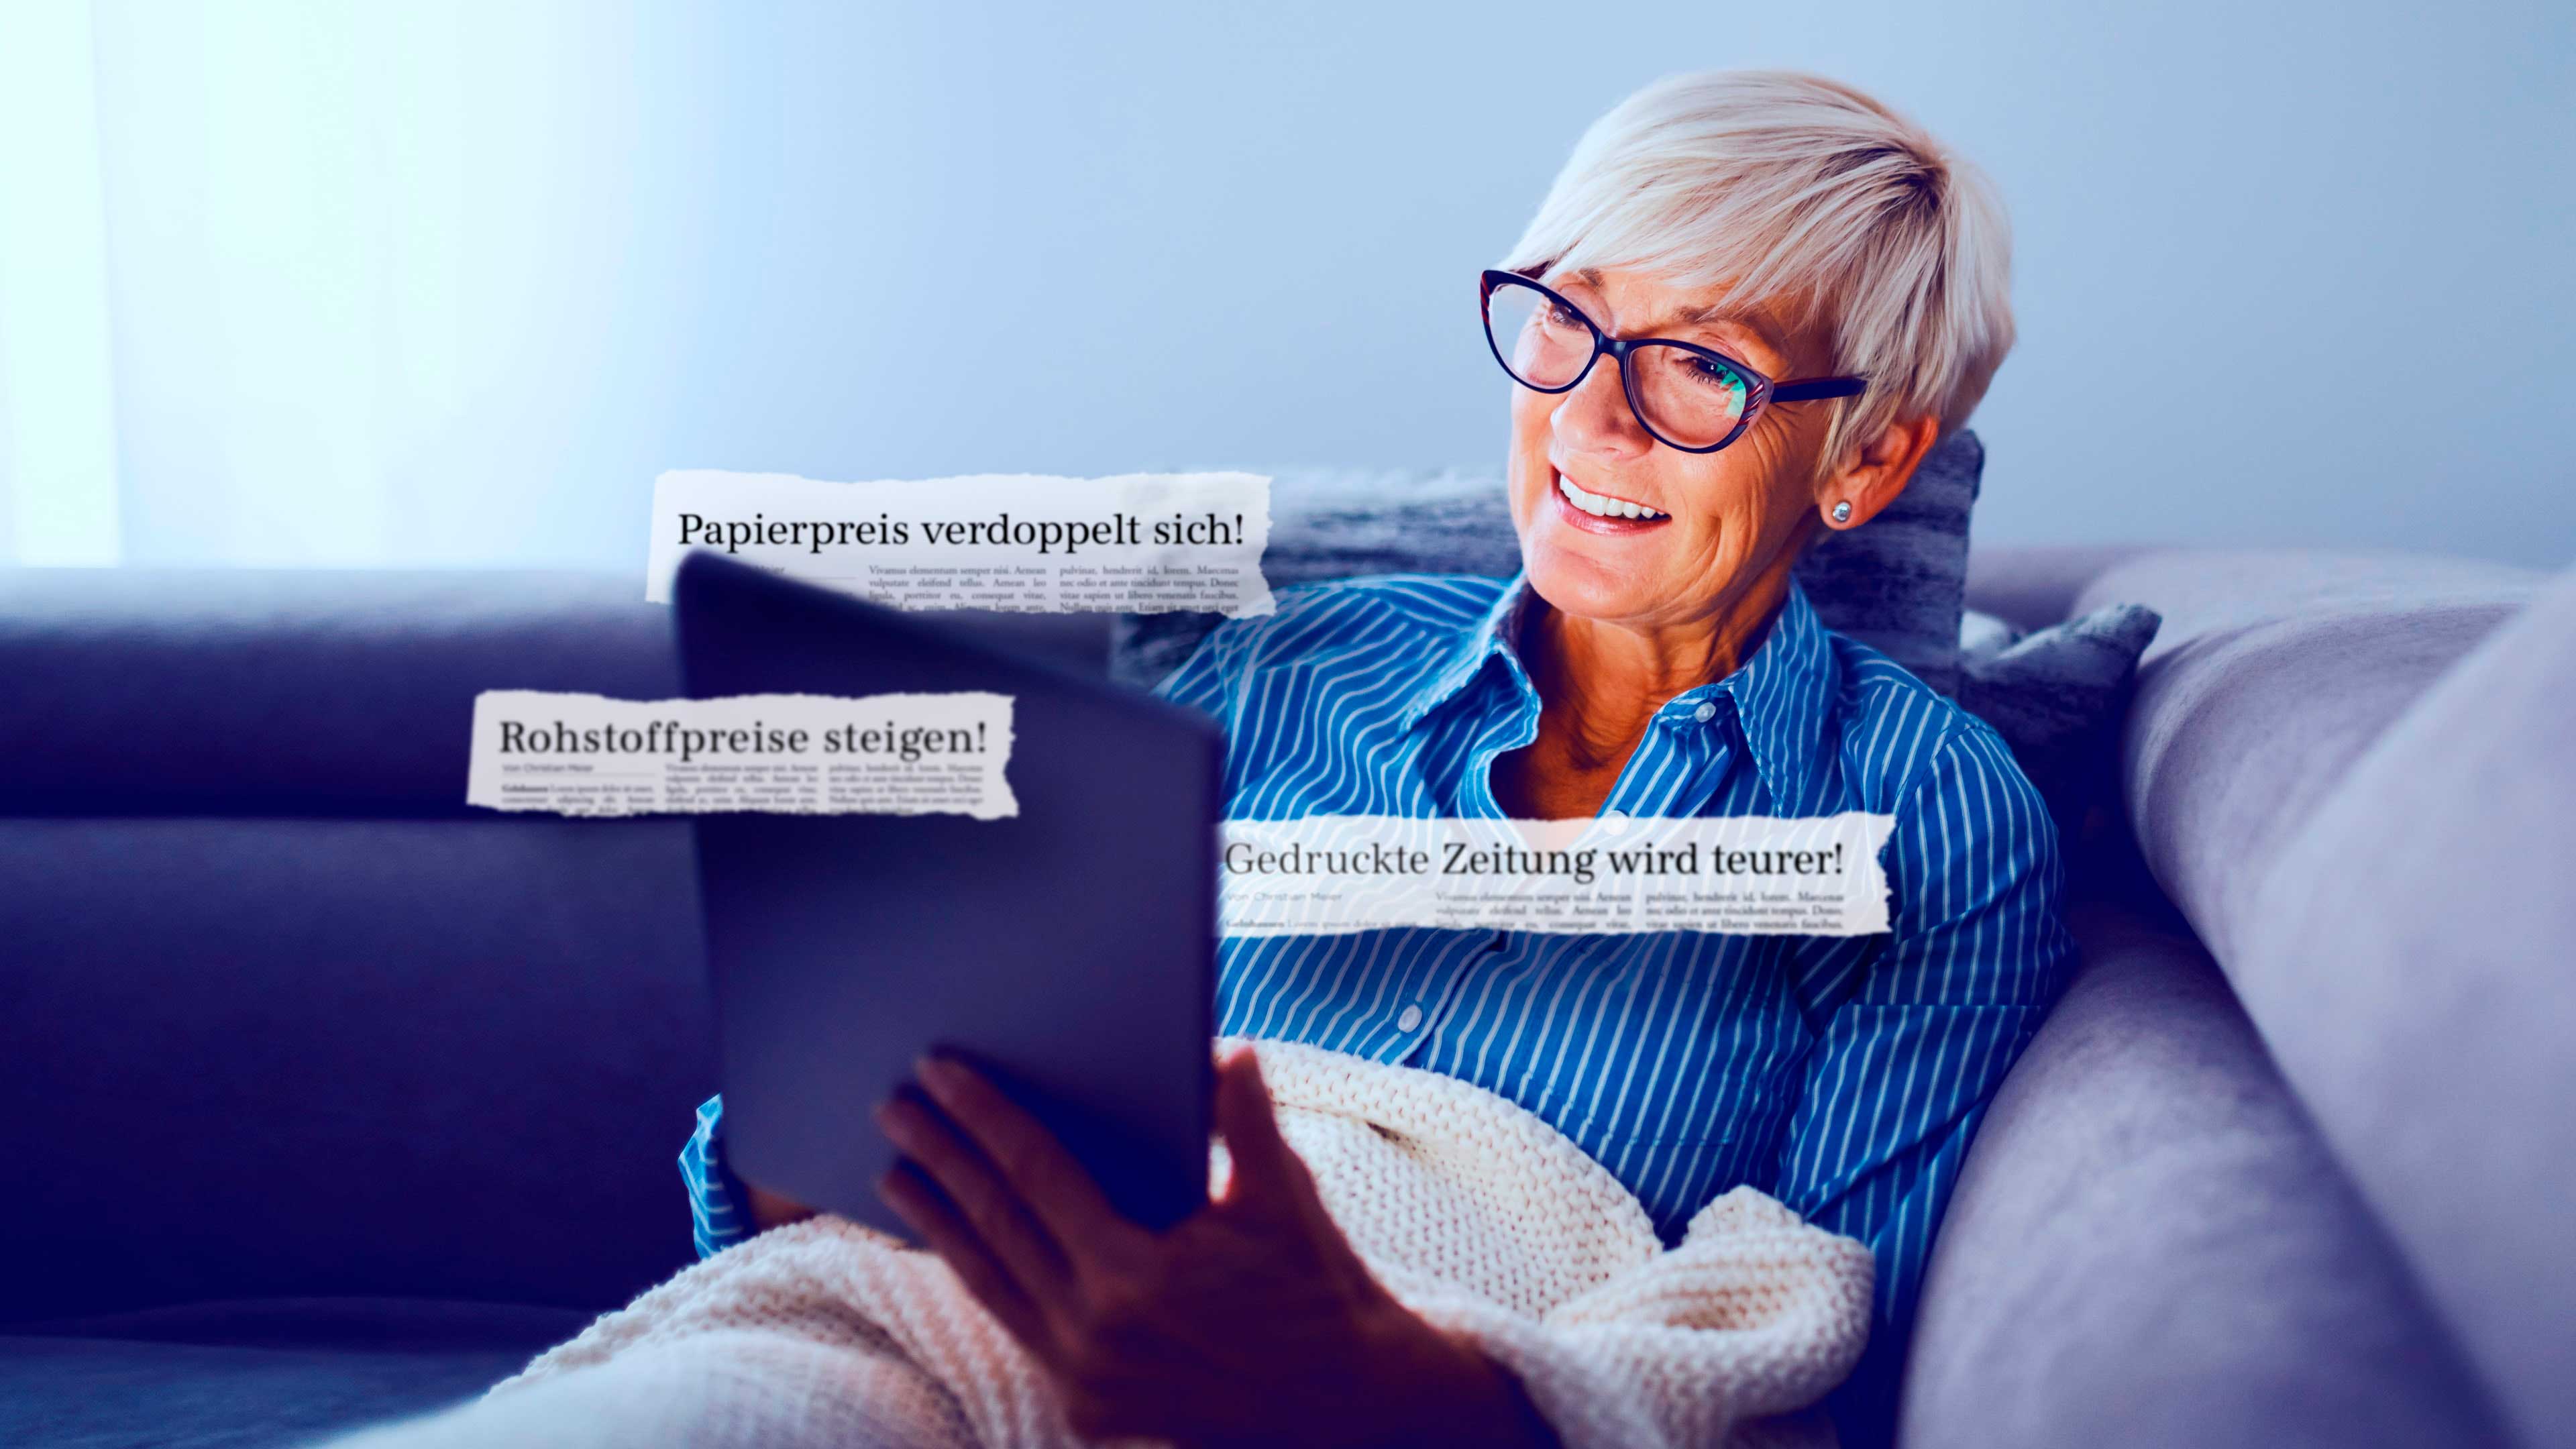 Seniorin mit Tablet auf dem Sofa mit Zeitungsschnipseln "Papierpreis verdoppelt sich" und "Gedruckte Zeitung wird teurer"